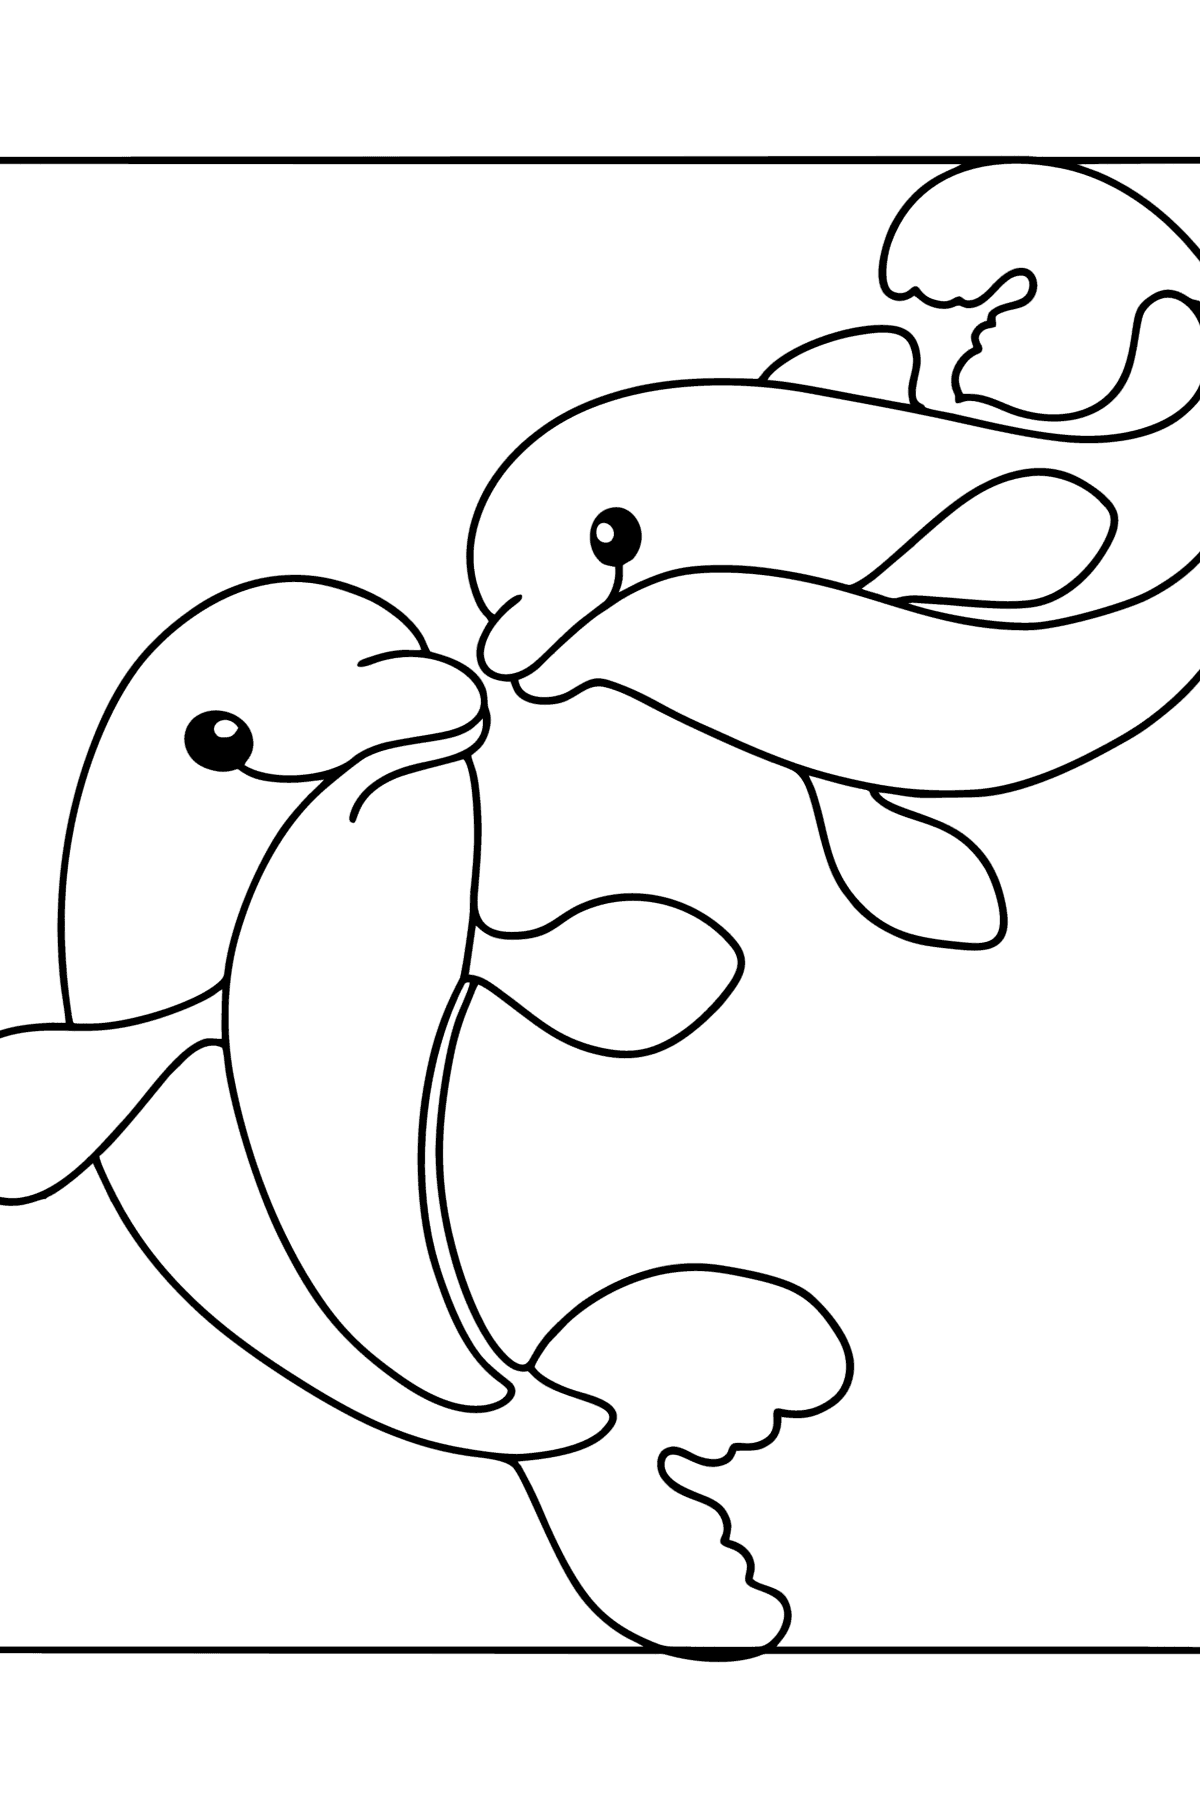 Dibujo de Lindos delfines para colorear - Dibujos para Colorear para Niños